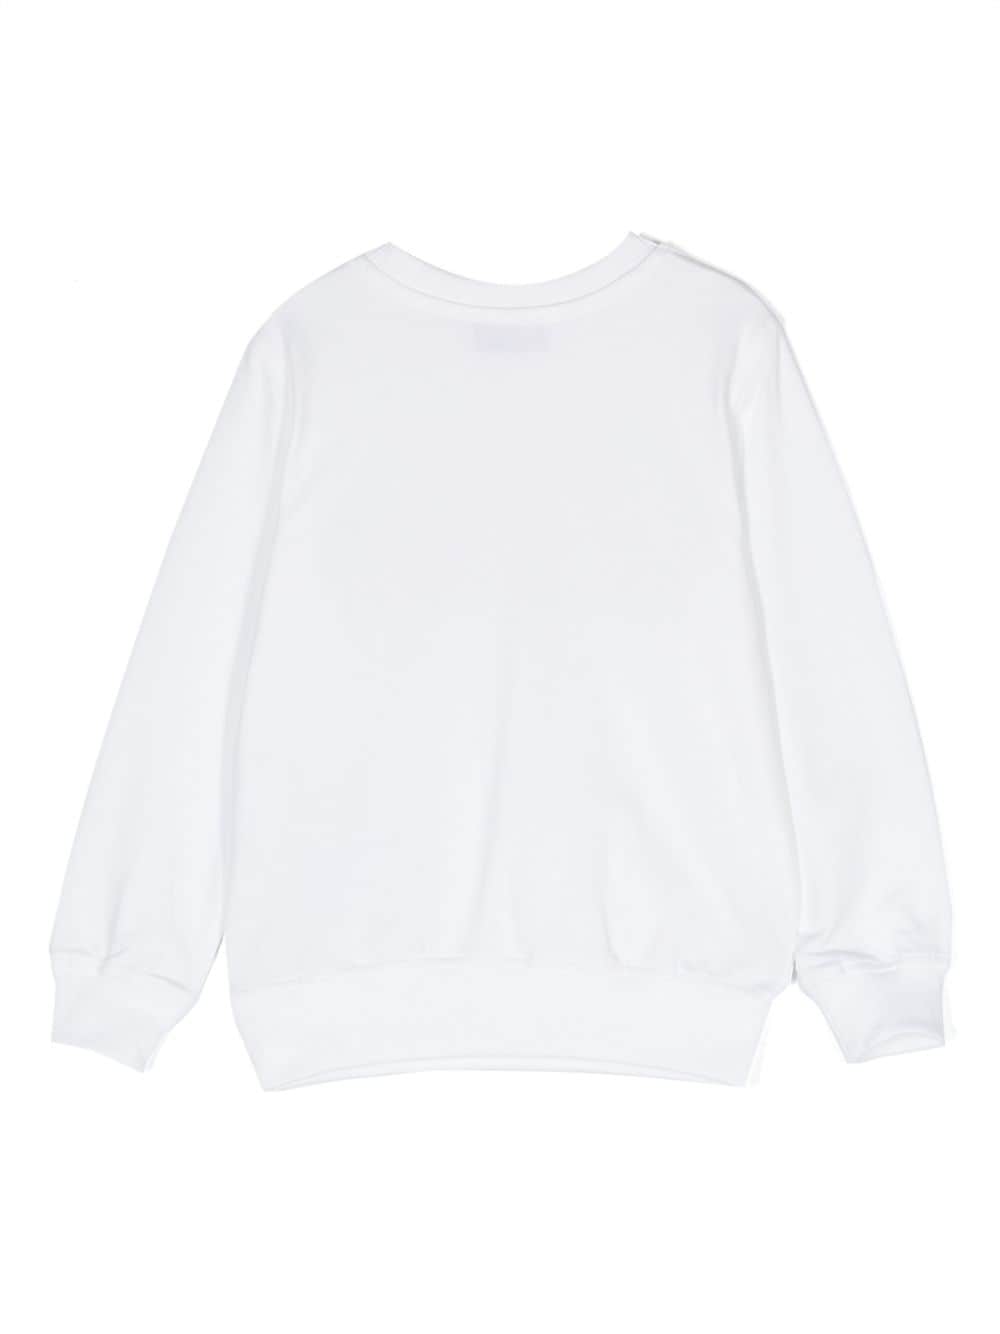 Unisex white cotton sweatshirt